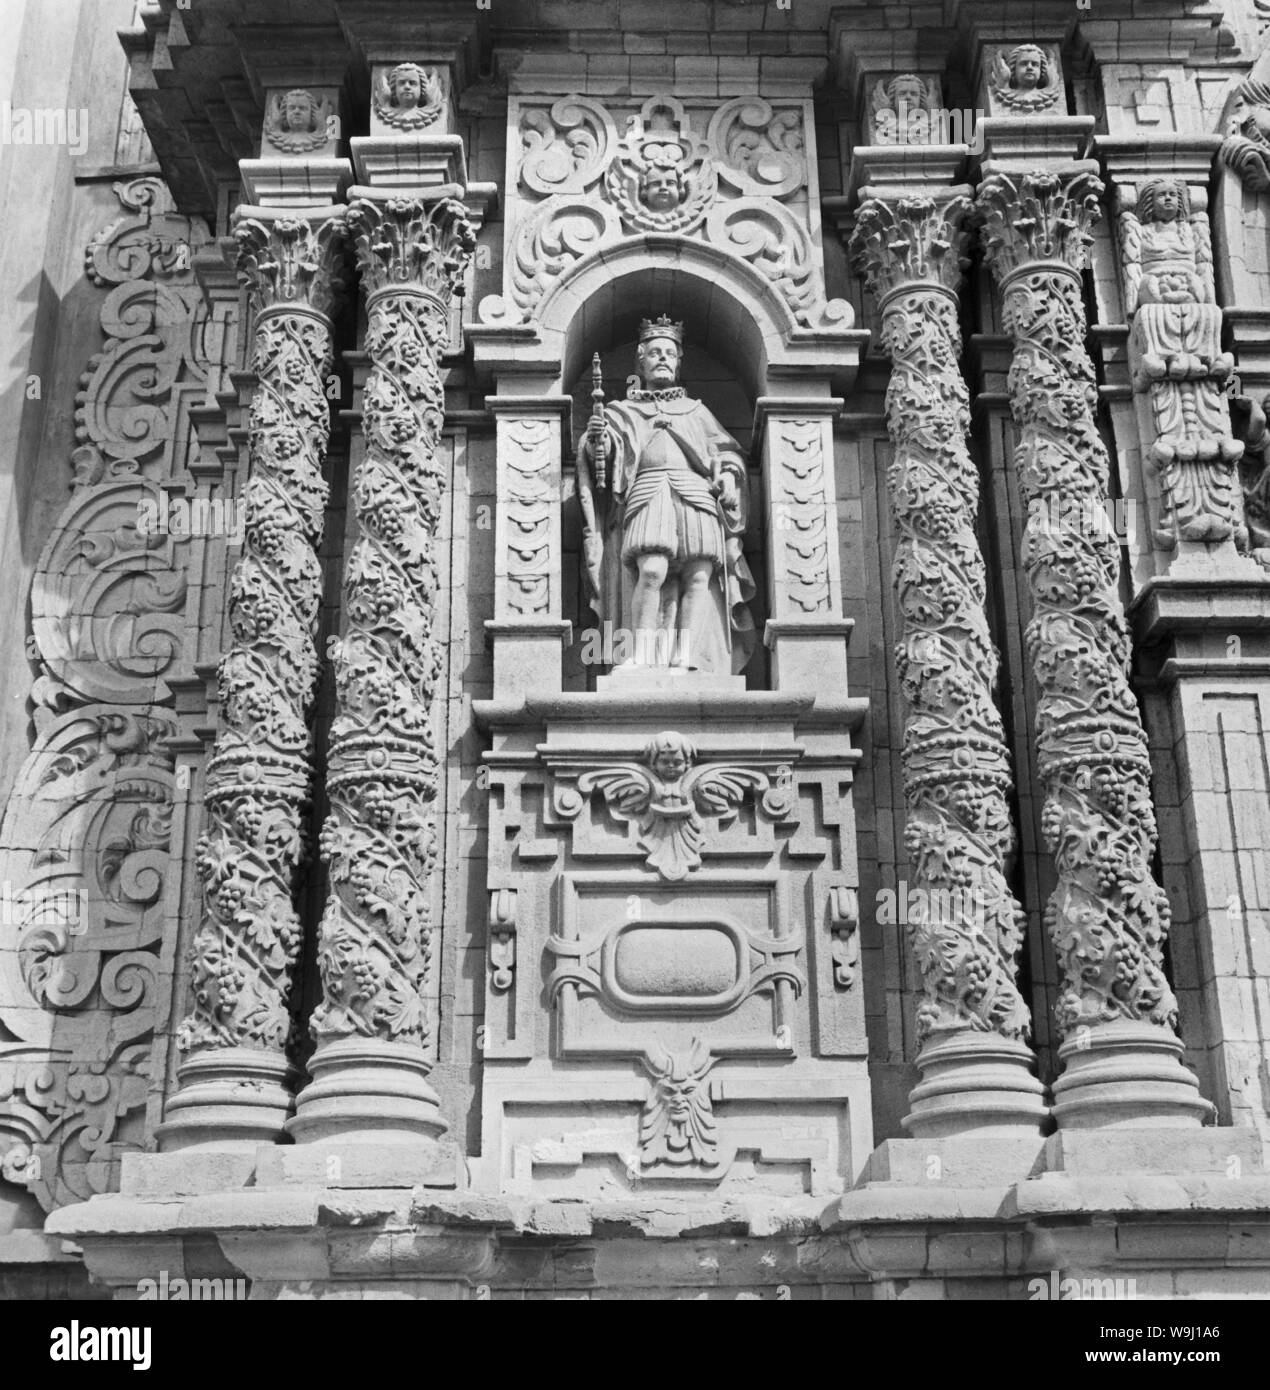 Détail am Eingang zu einer Kirche mit der Heiligen Jungfrau Maria au Pérou, 1960 er Jahre. Détail à l'entrée d'une église de la Sainte Vierge Marie au Pérou, 1960. Banque D'Images